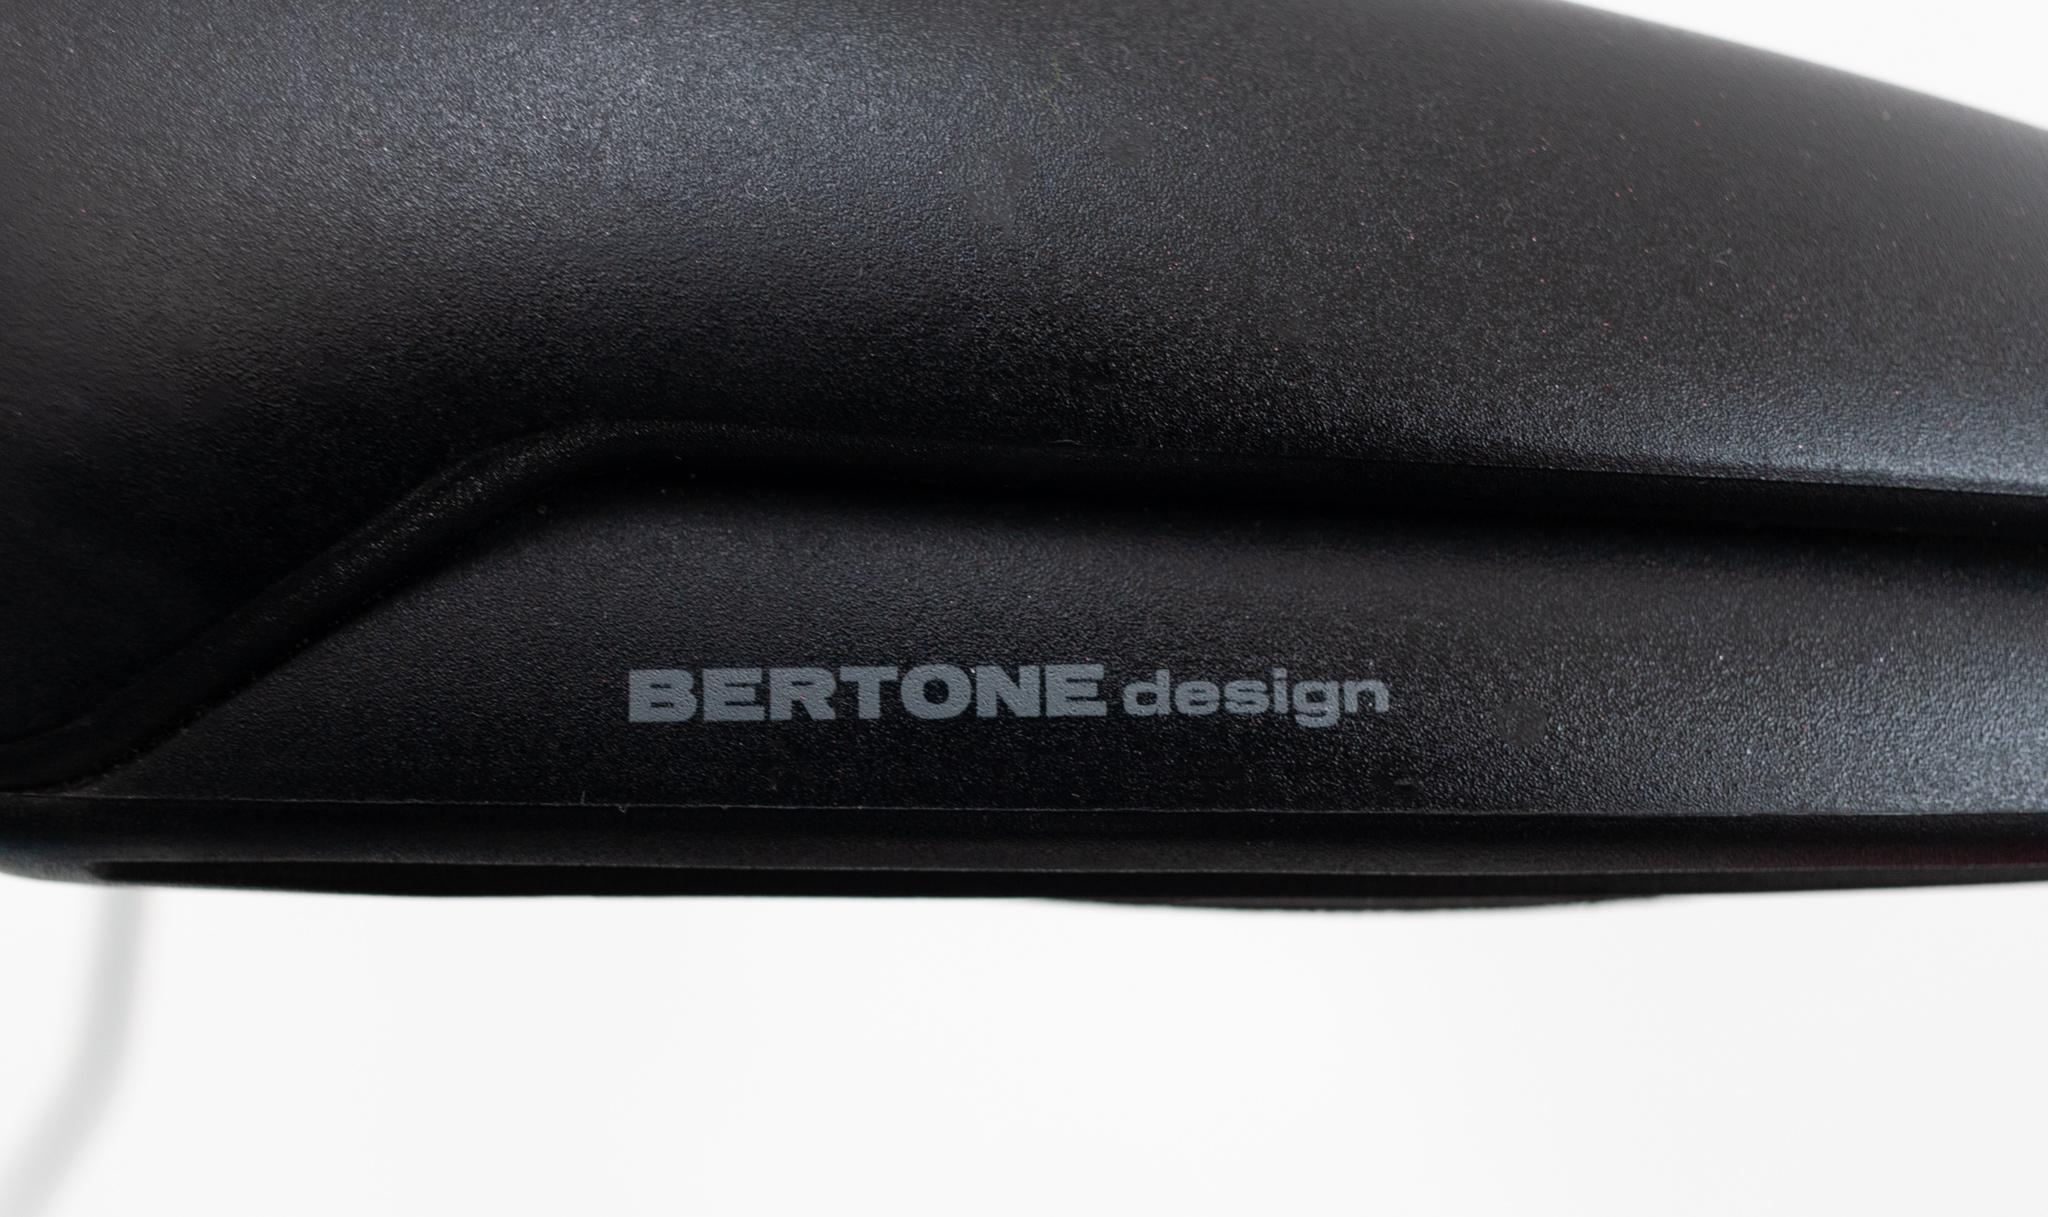 Bertone Desk Lamp Model Keos 2